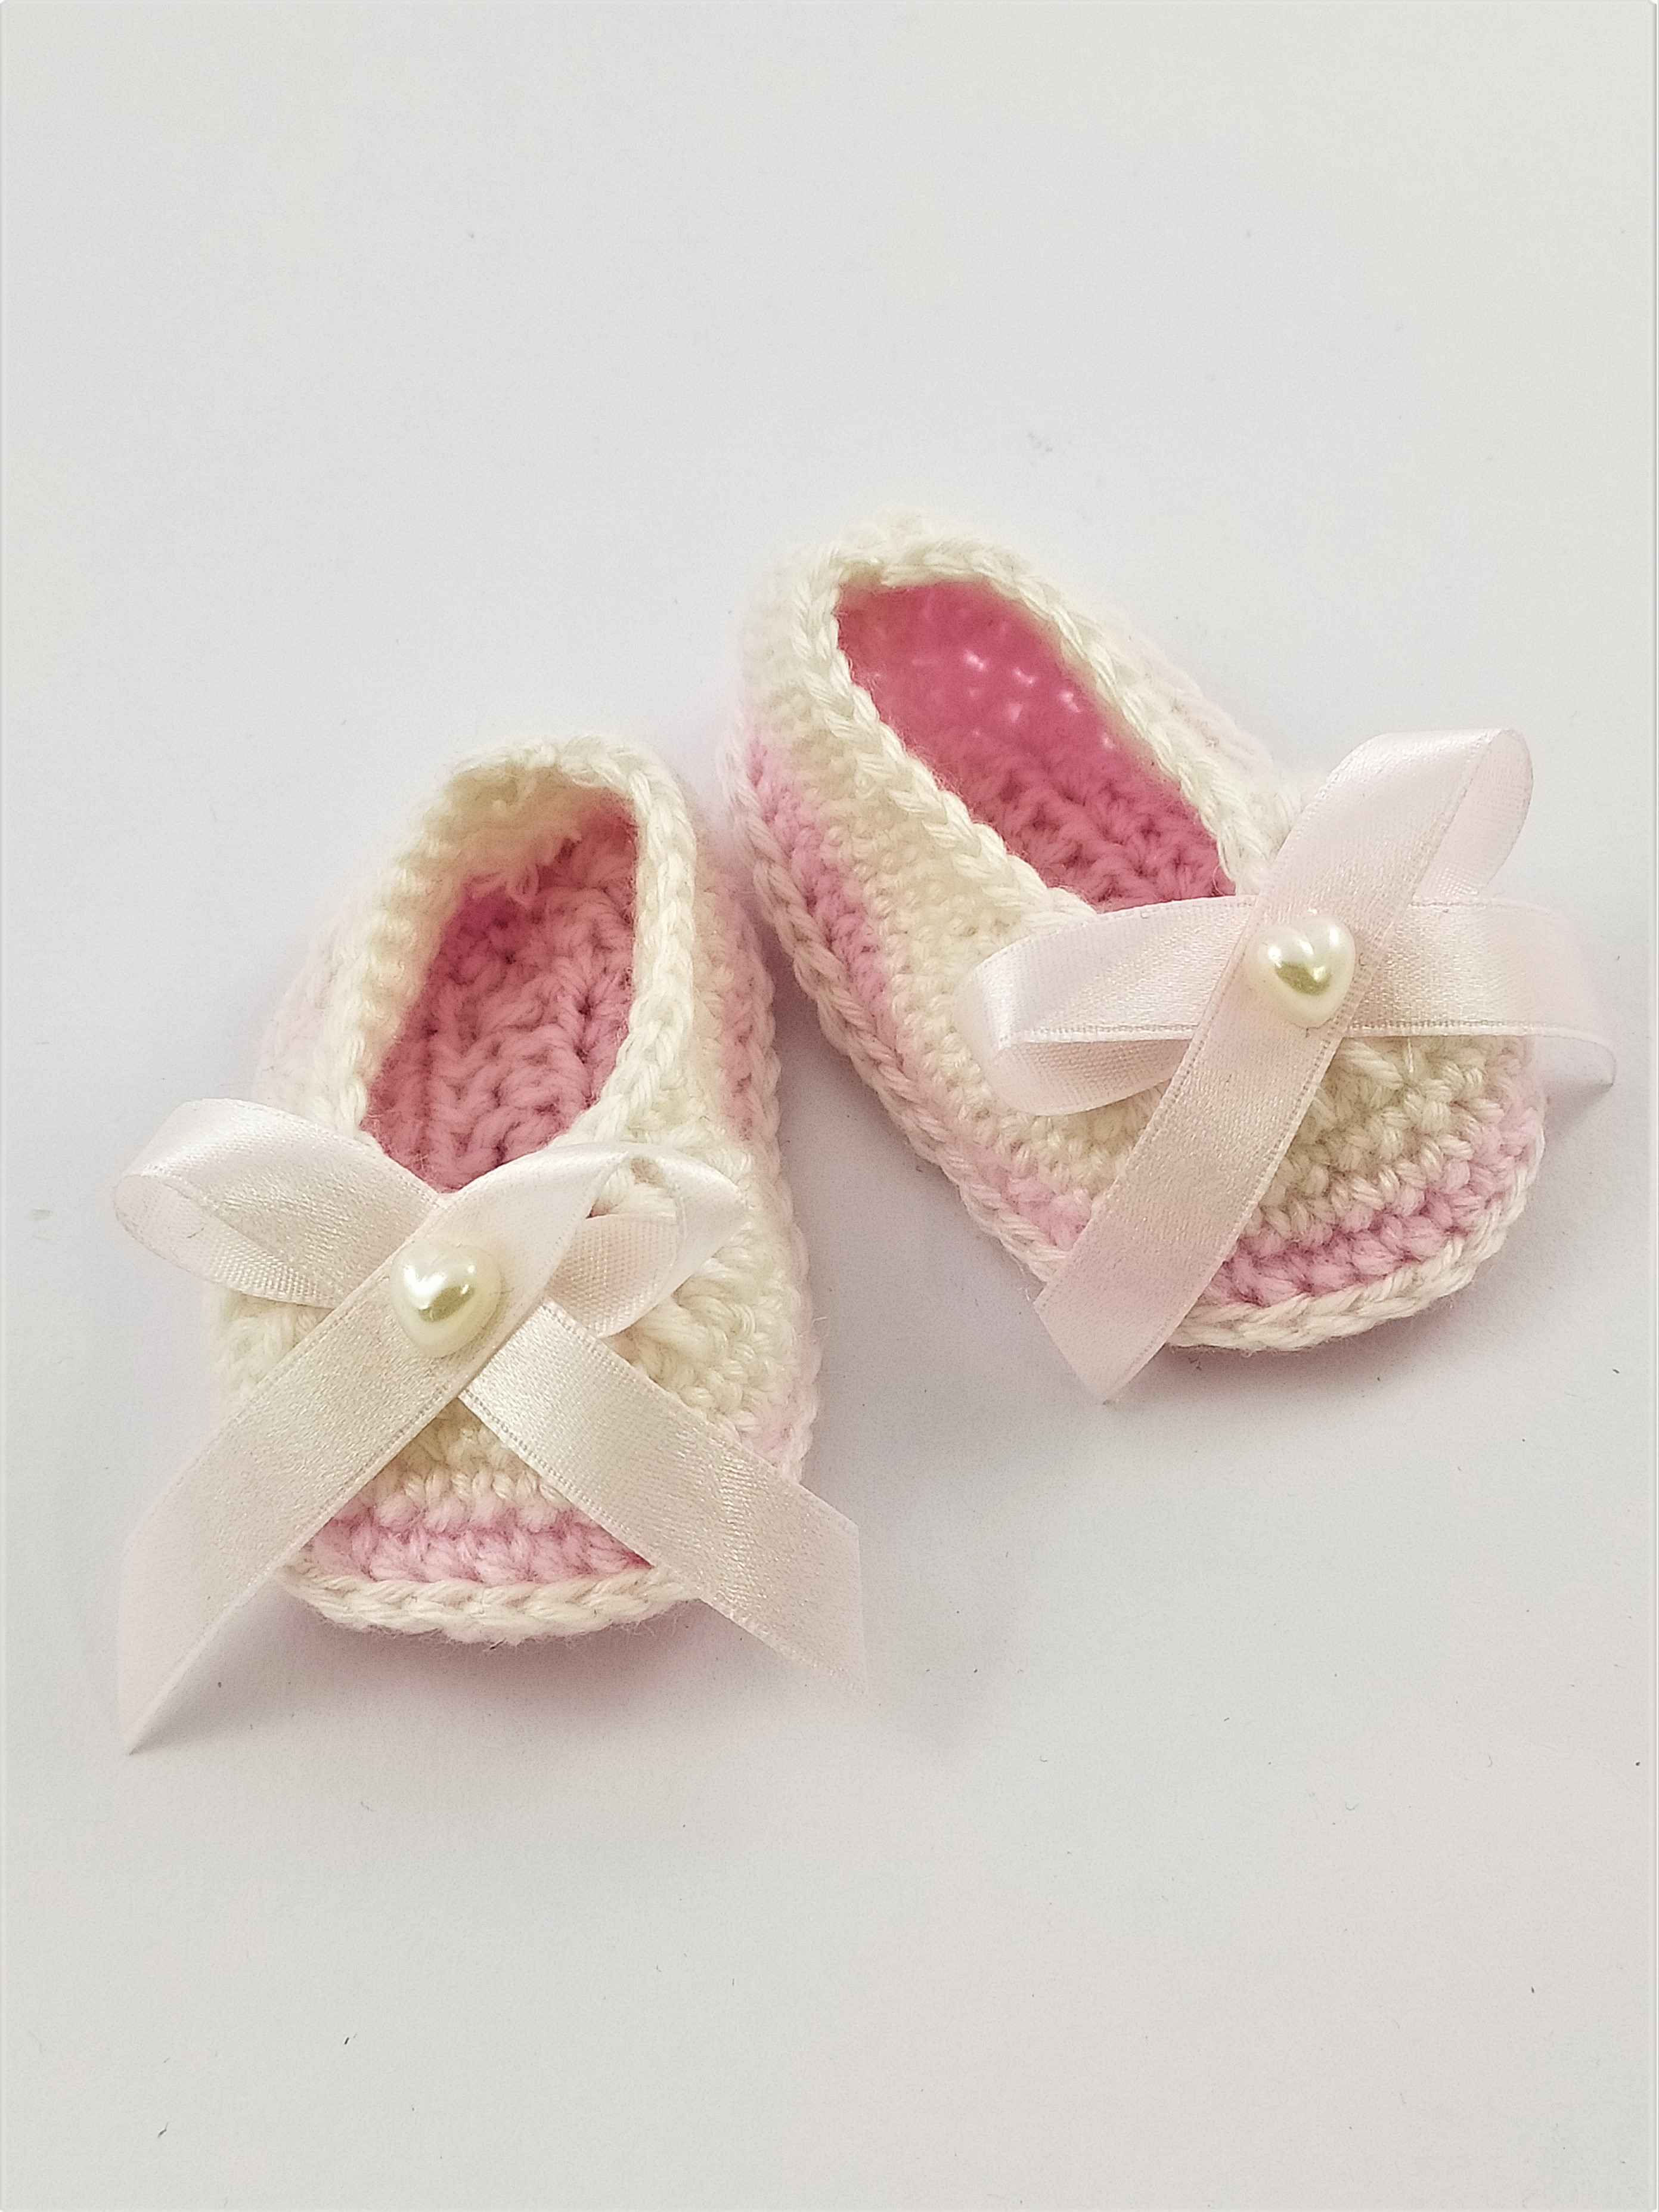 Háčkované botičky krémovo-růžové, vhodné ke křtinám